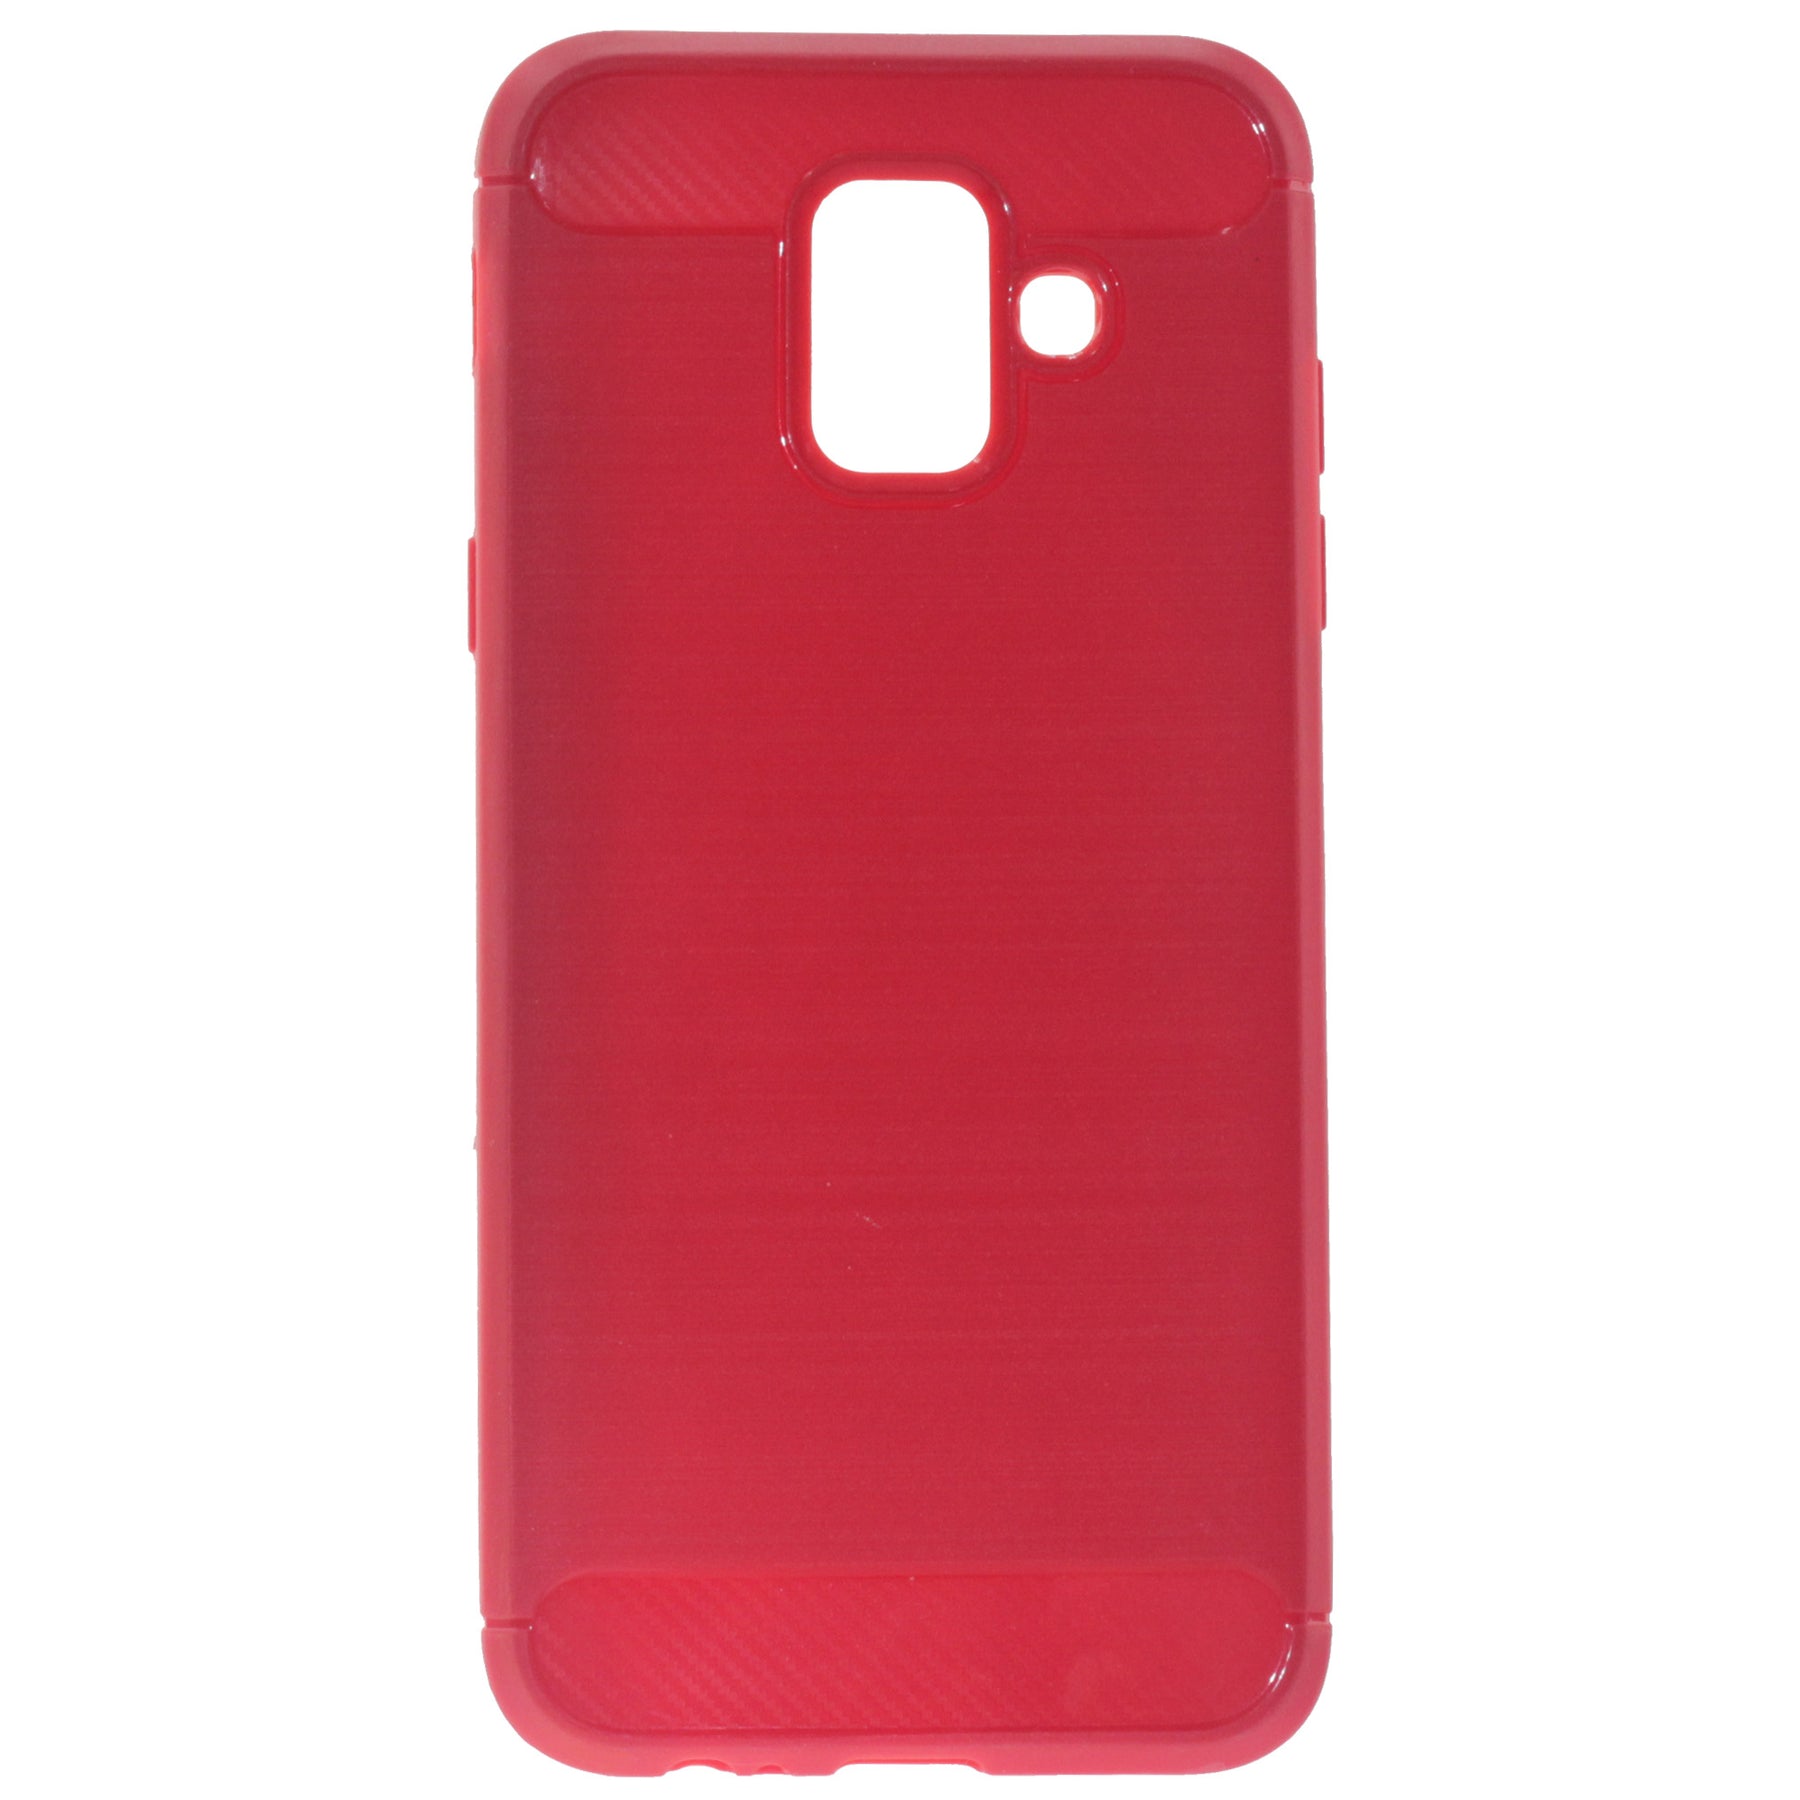 Samsung A6 2018 red case